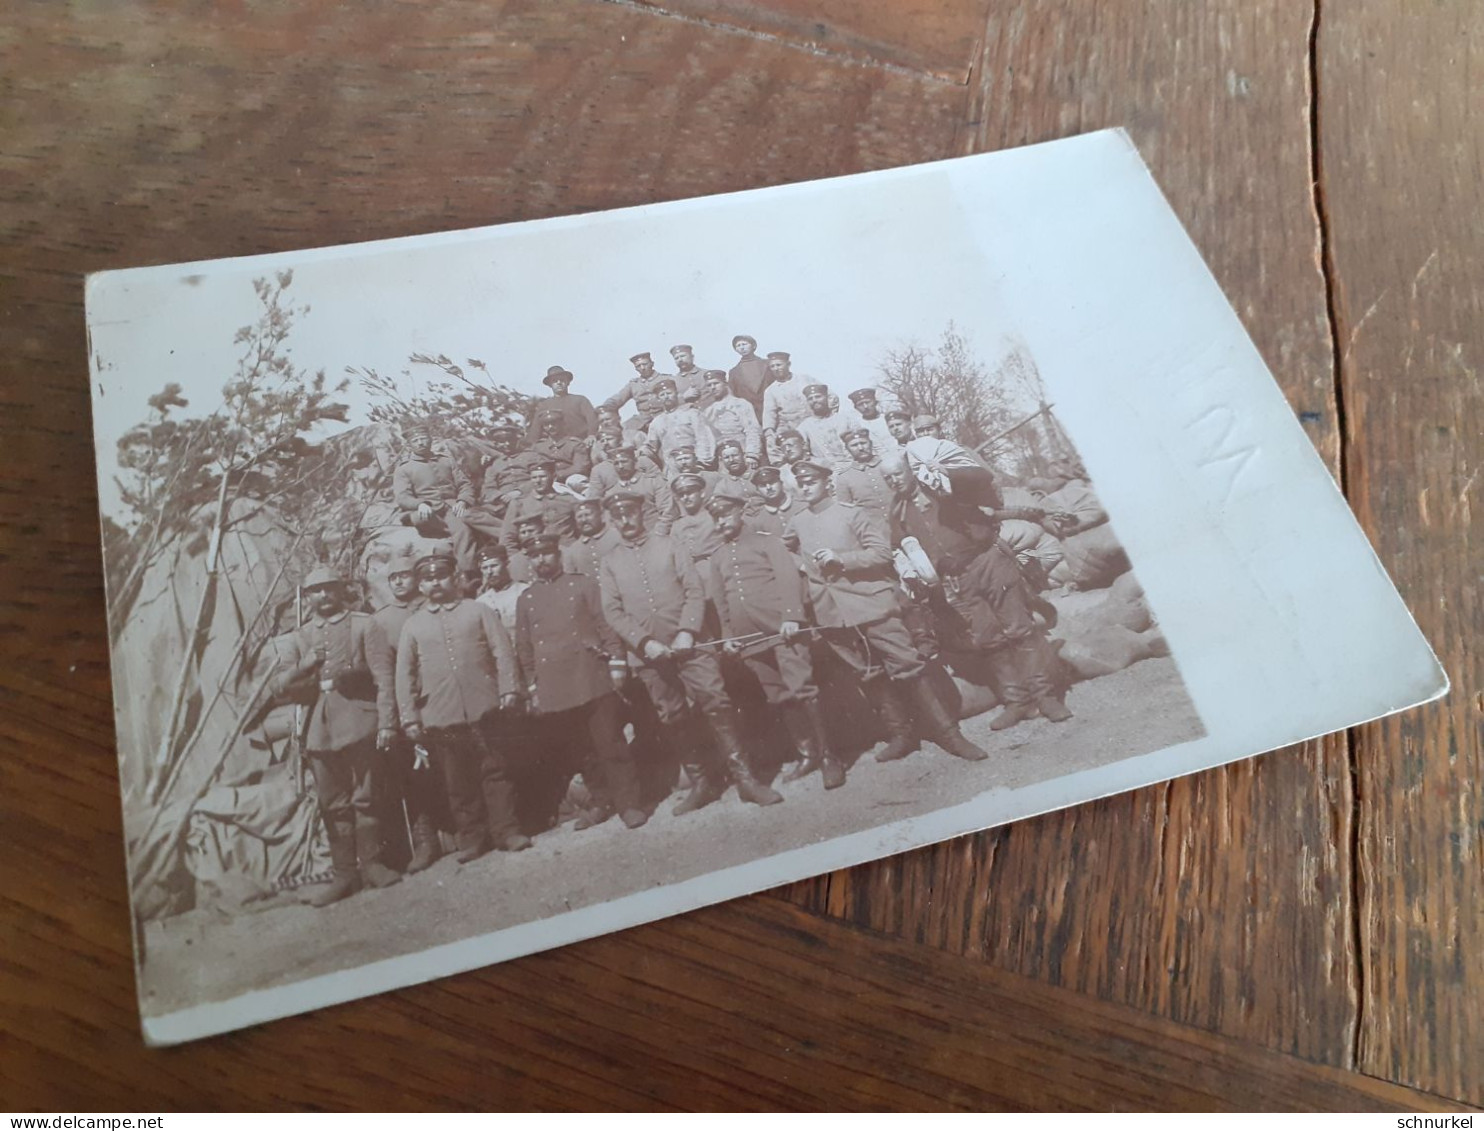 JOHANNISBURG - RUSSLAND - PREUSSISCH EYLAU - 1915 - OFFIZIERE SOLDATEN In POSE - BRUNO An MARTHA REUST Nach GRAUDENZ - Guerre, Militaire